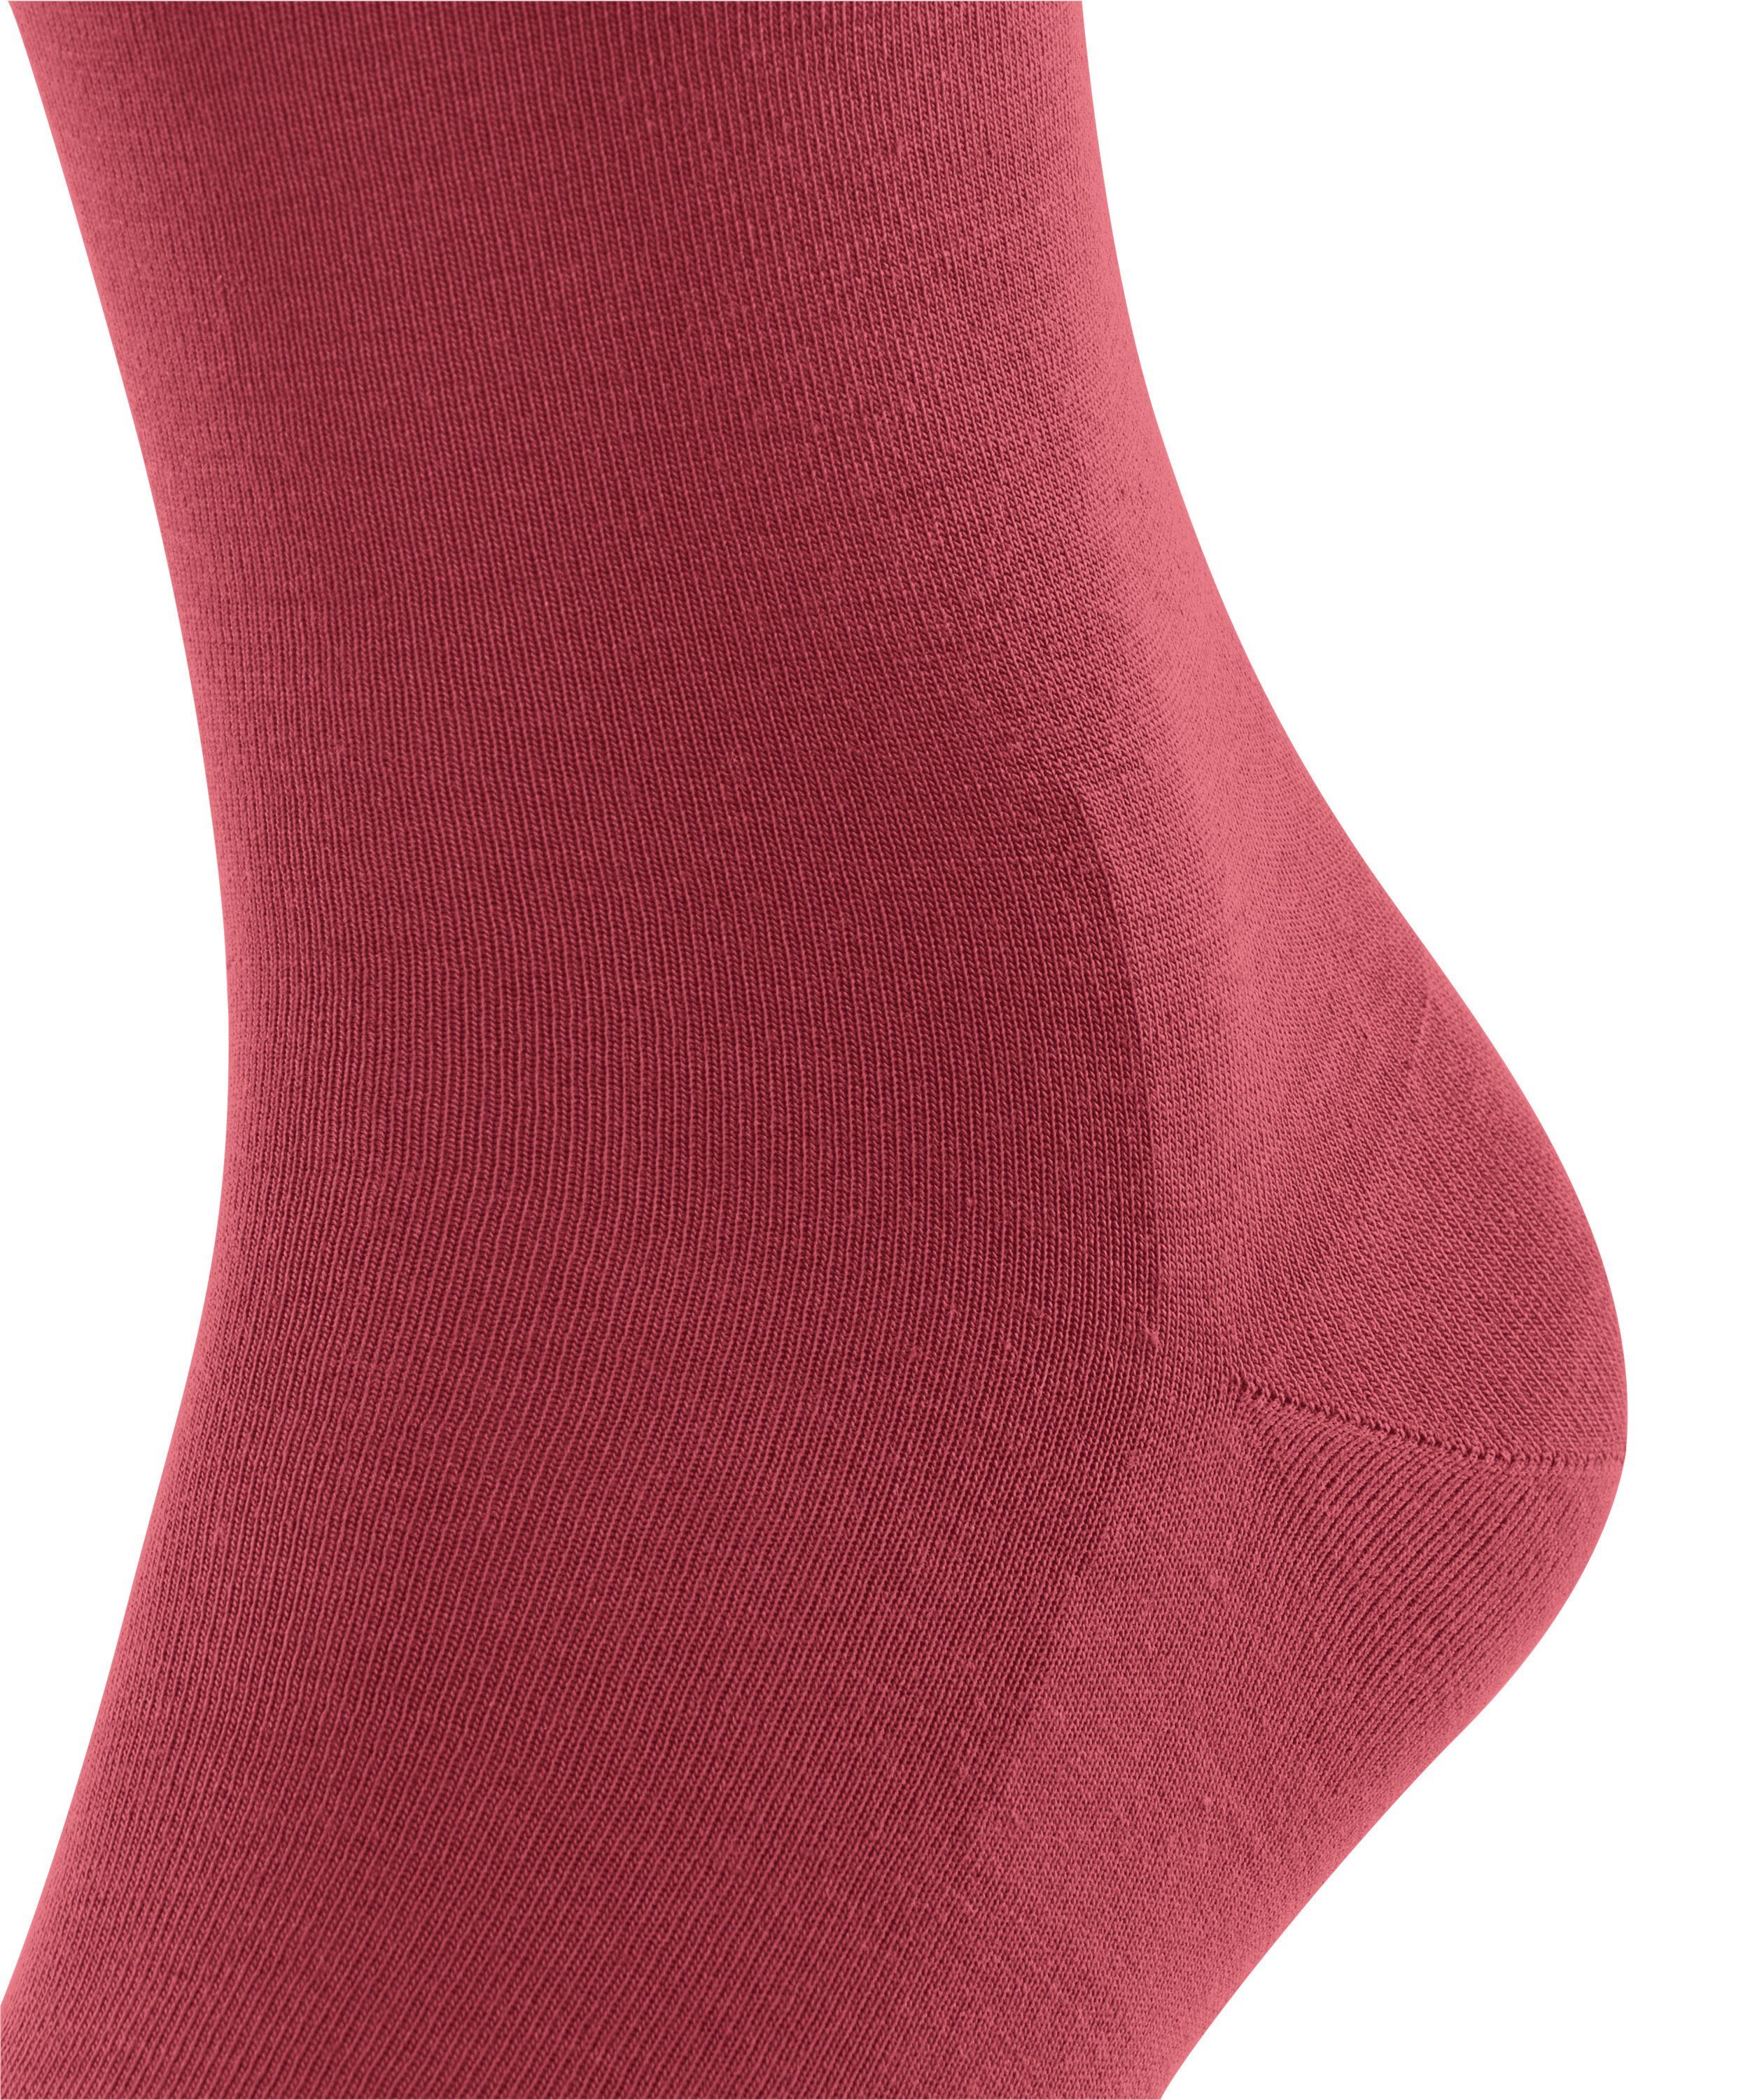 (8032) FALKE (1-Paar) ClimaWool Socken redwine